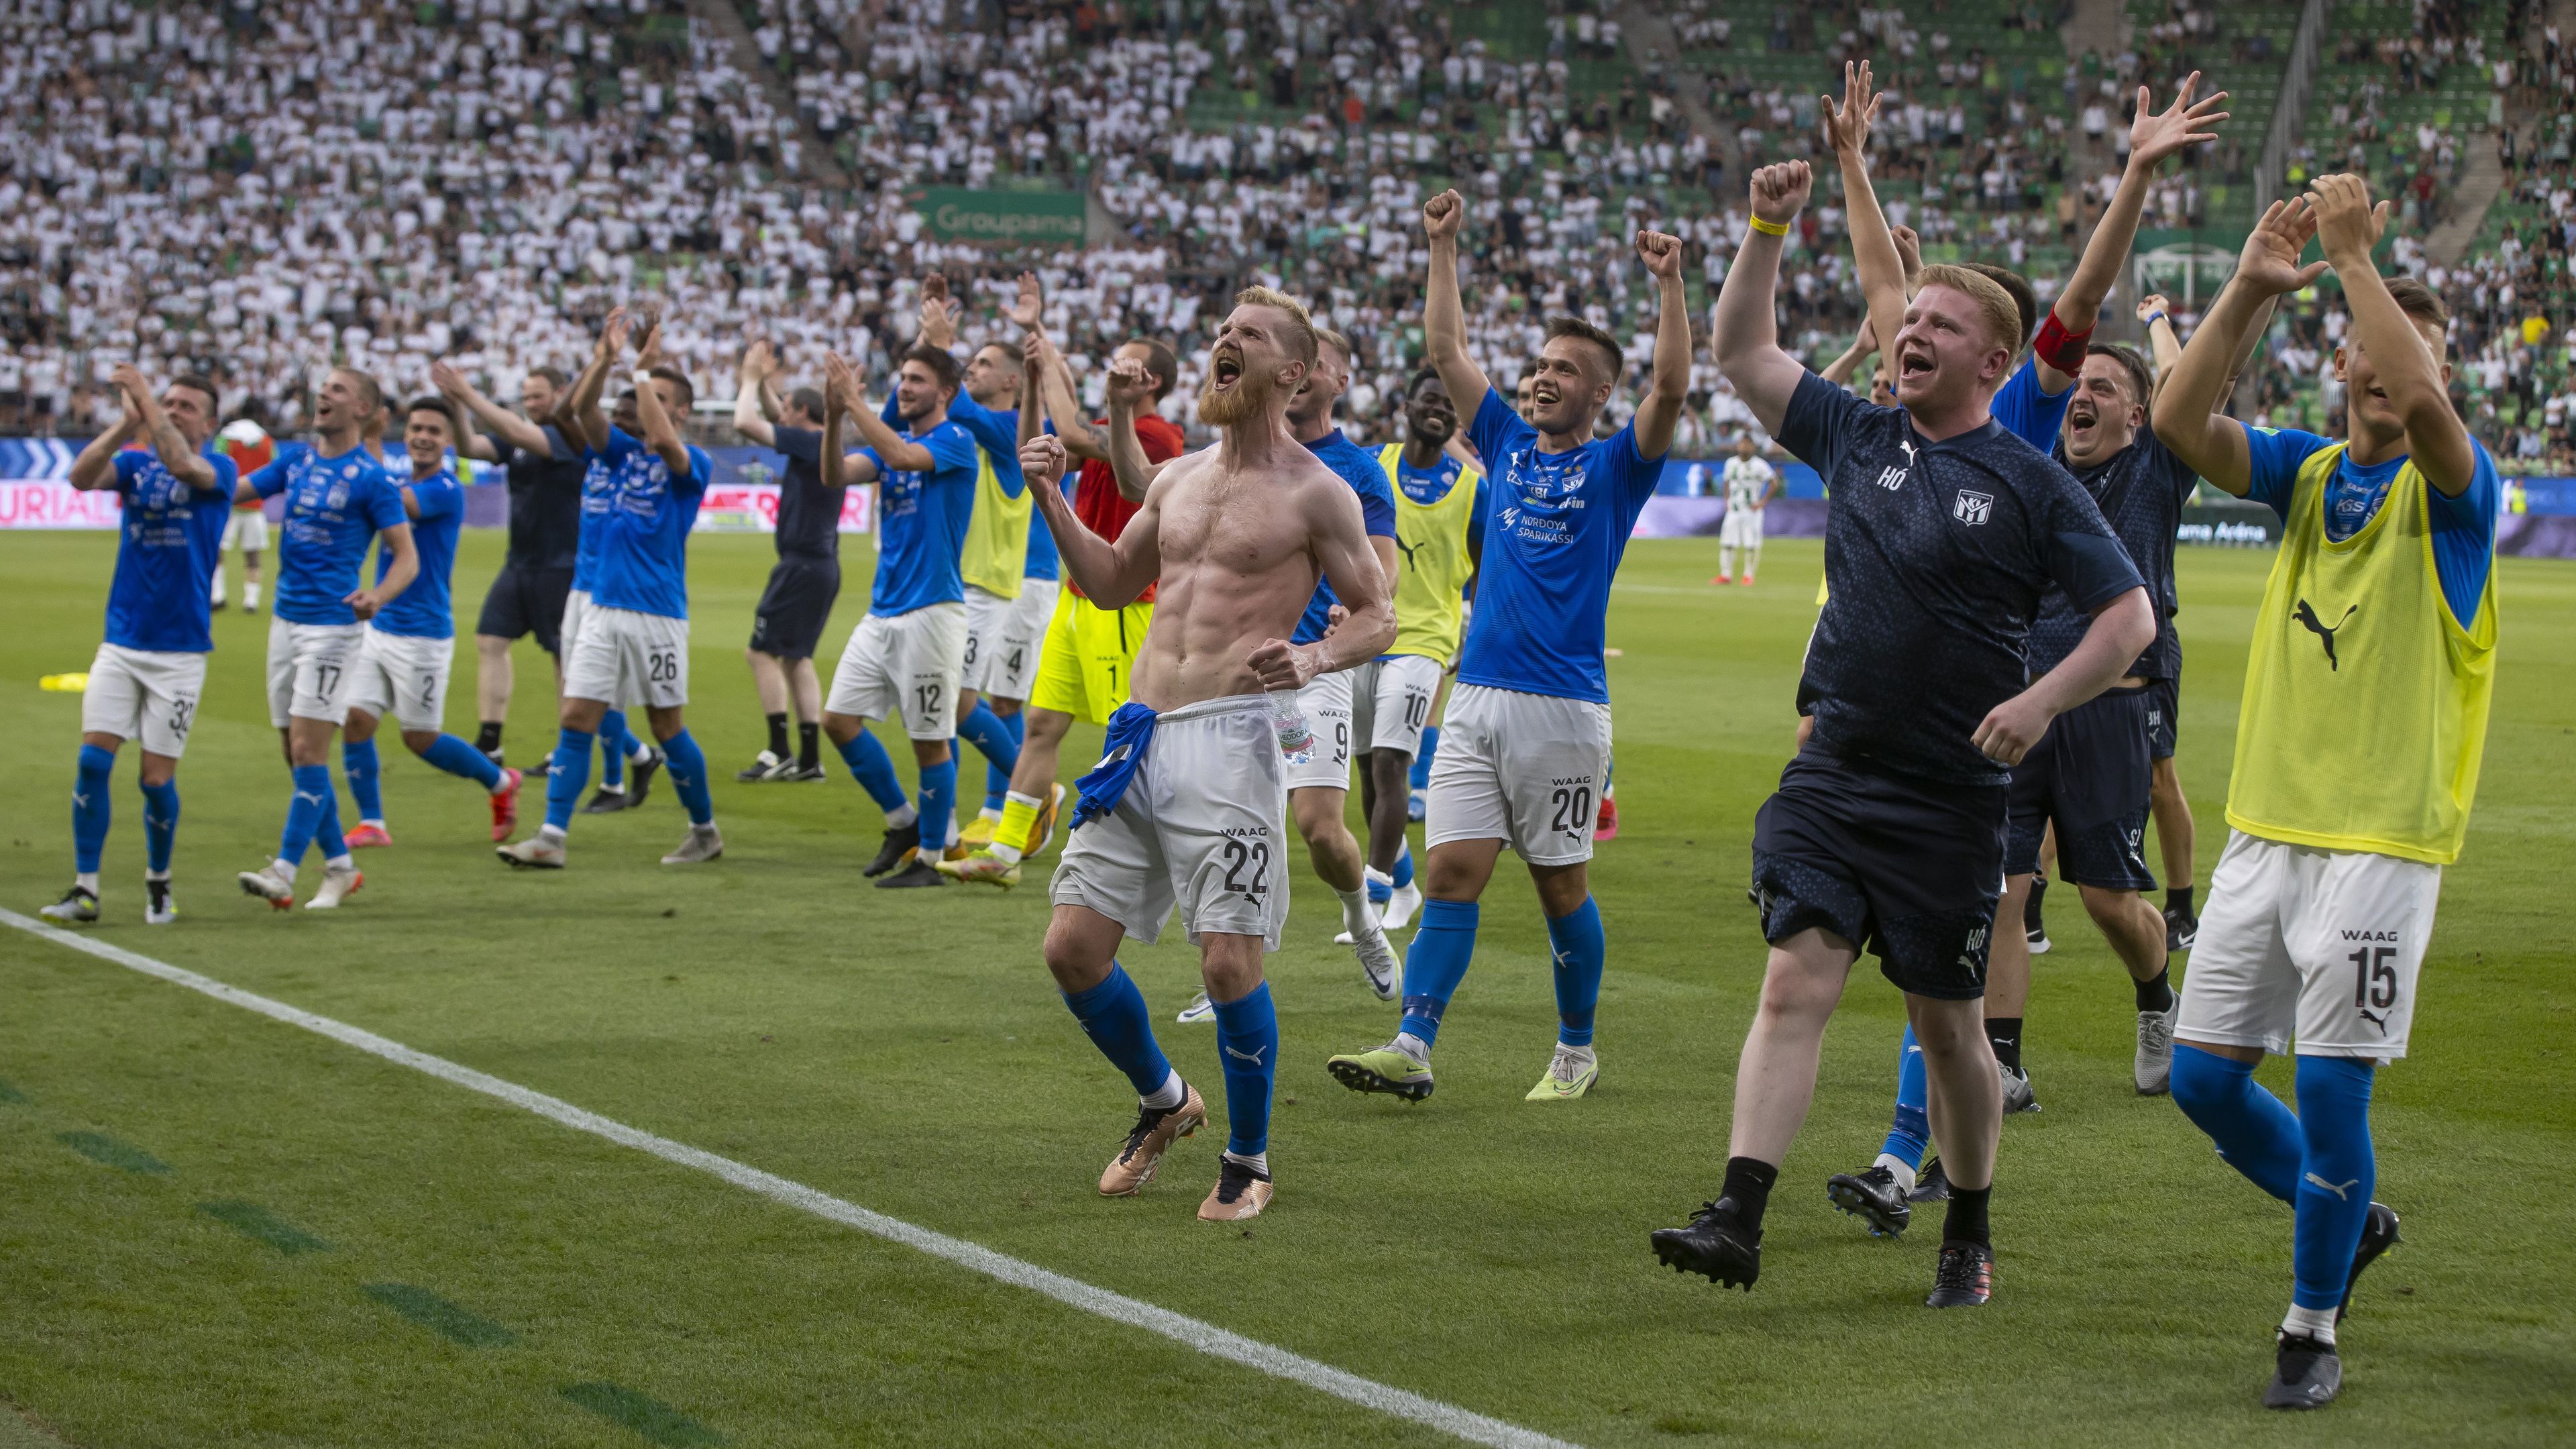 A Klaksvík gól nélküli döntetlent játszott hazai pályán a svéd bajnokkal, így minden esélye megvan a továbbjutásra a jövő heti visszavágó előtt Fotó: Czerkl Gábor